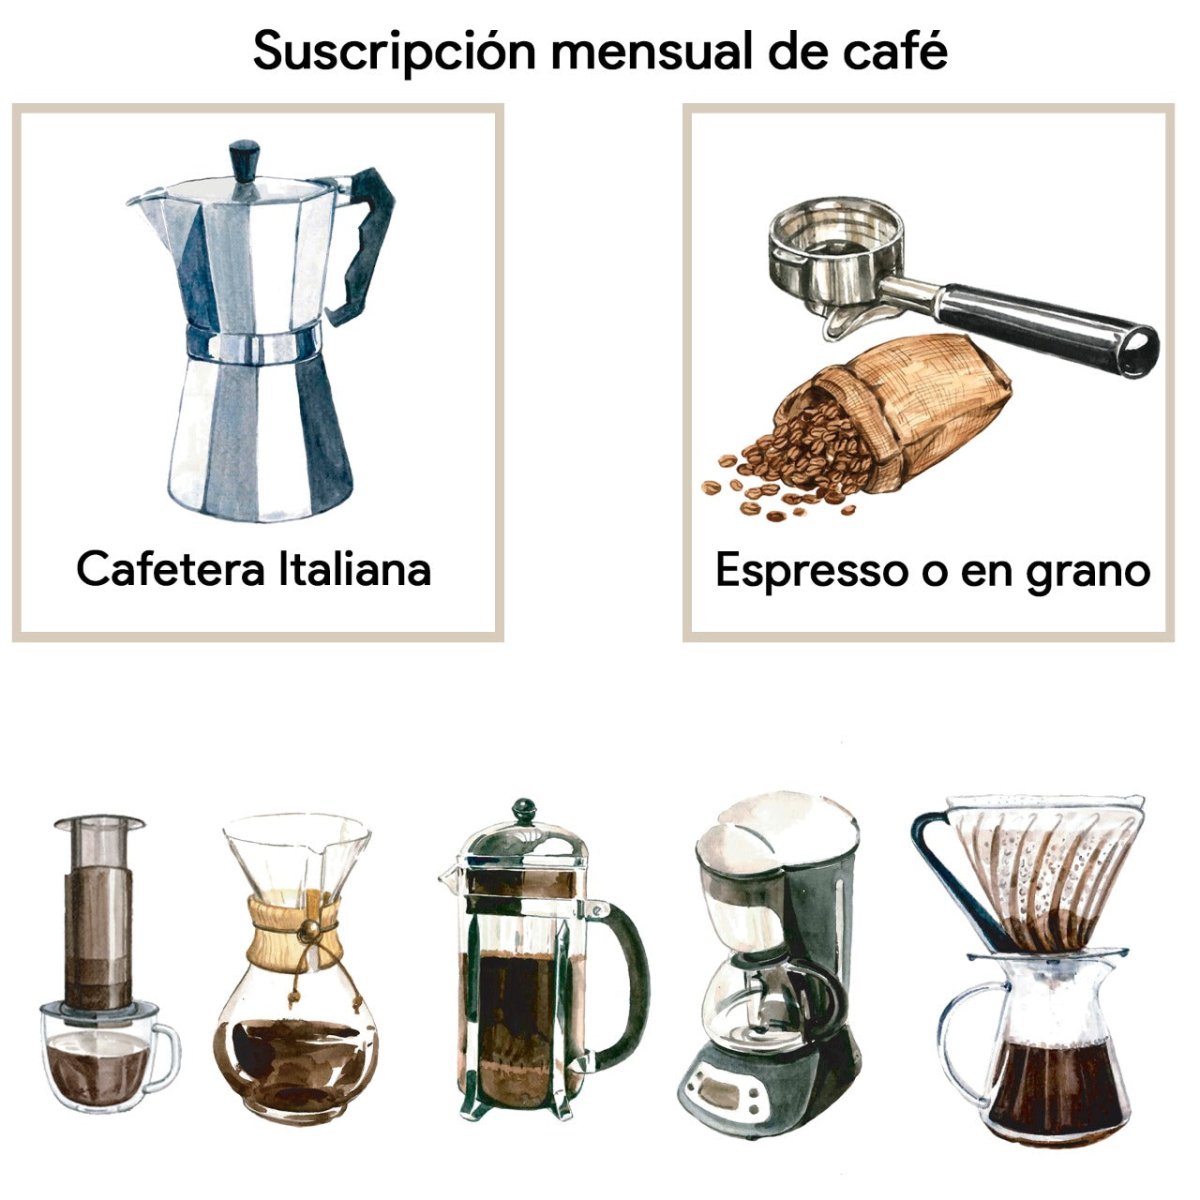 Café en cafetera italiana y otras cafeteras